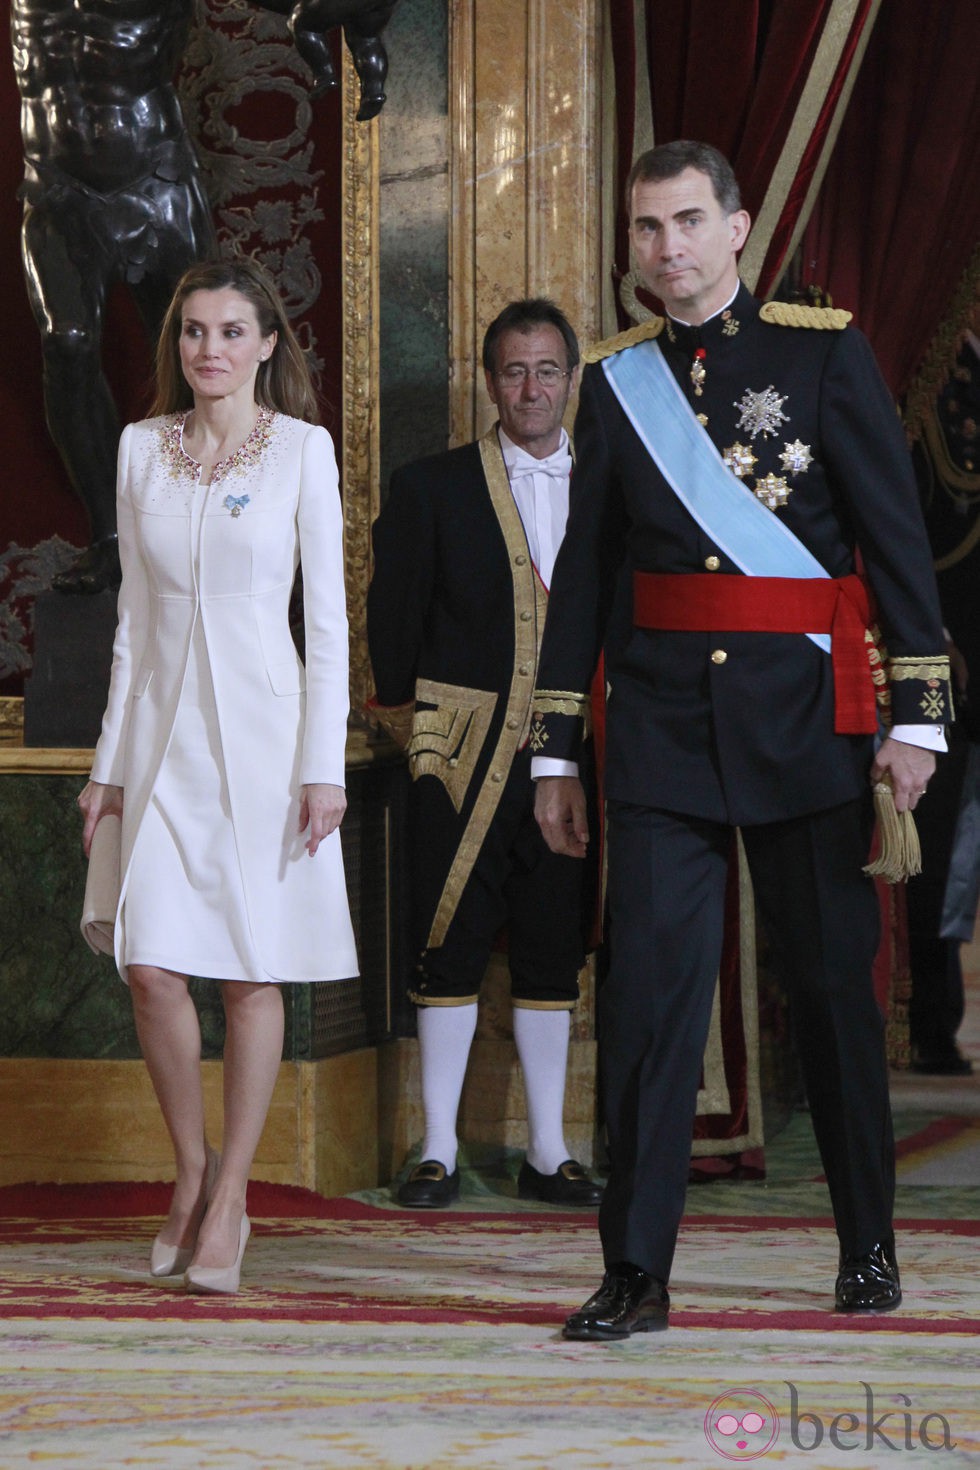 Don Felipe y Doña Letizia llegando a su primera recepción como Reyes de España